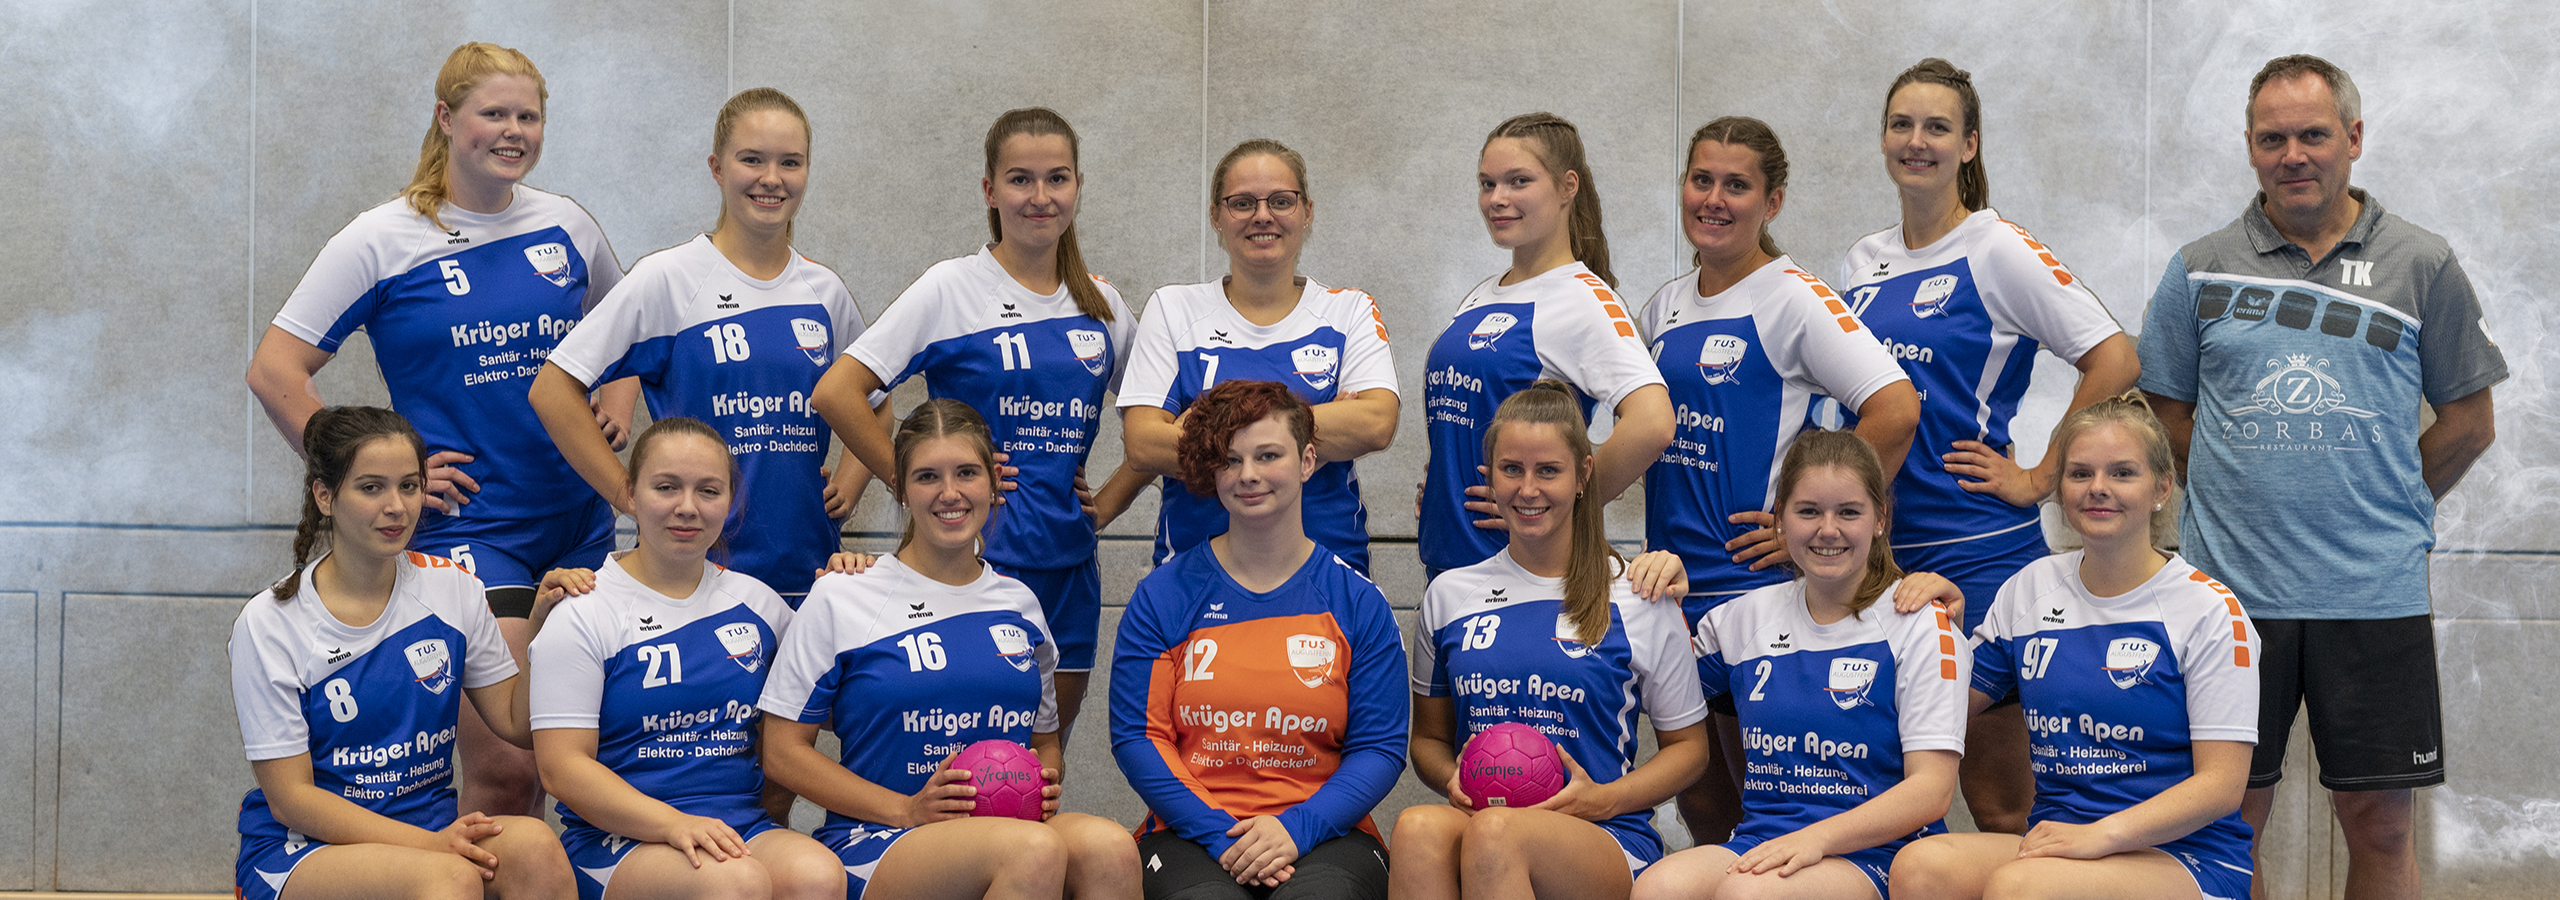 1. Damen Handball Gruppenfoto